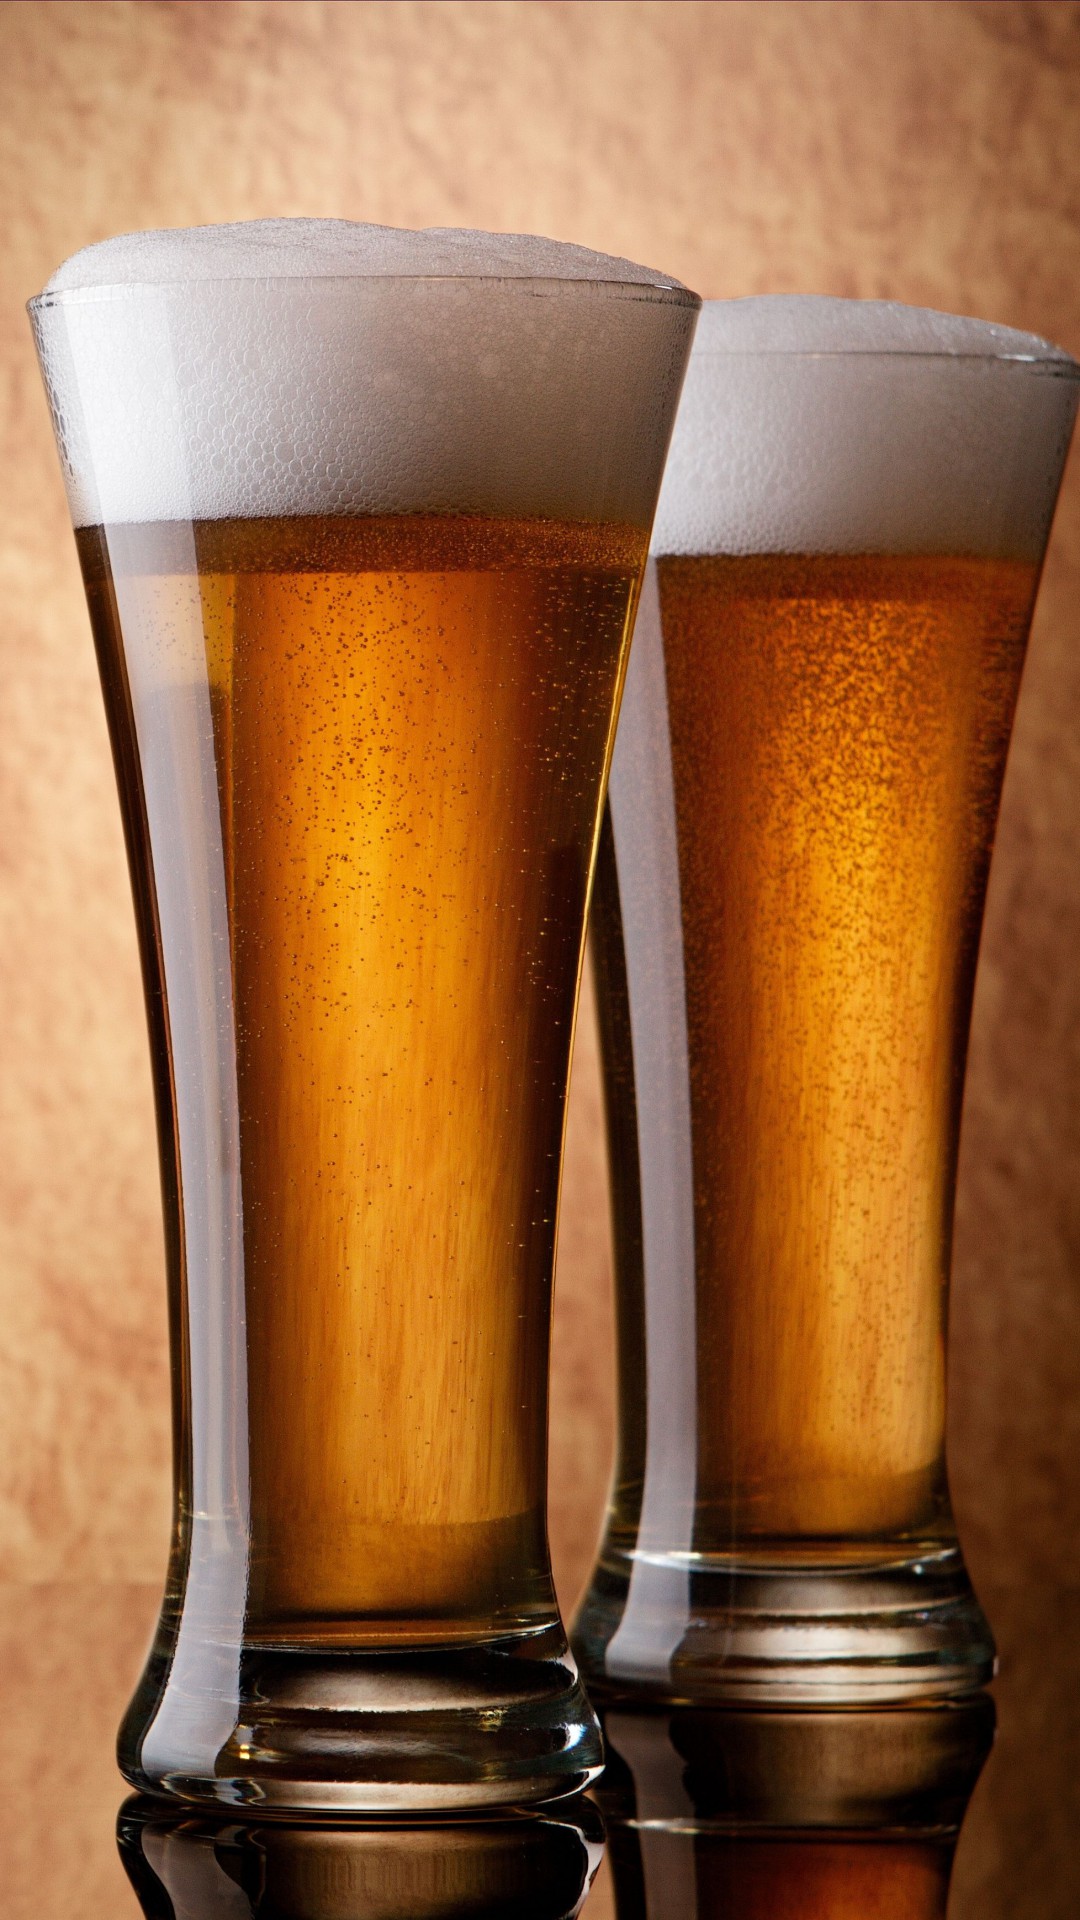 bier iphone wallpaper,bierglas,getränk,bier,pintglas,alkoholisches getränk